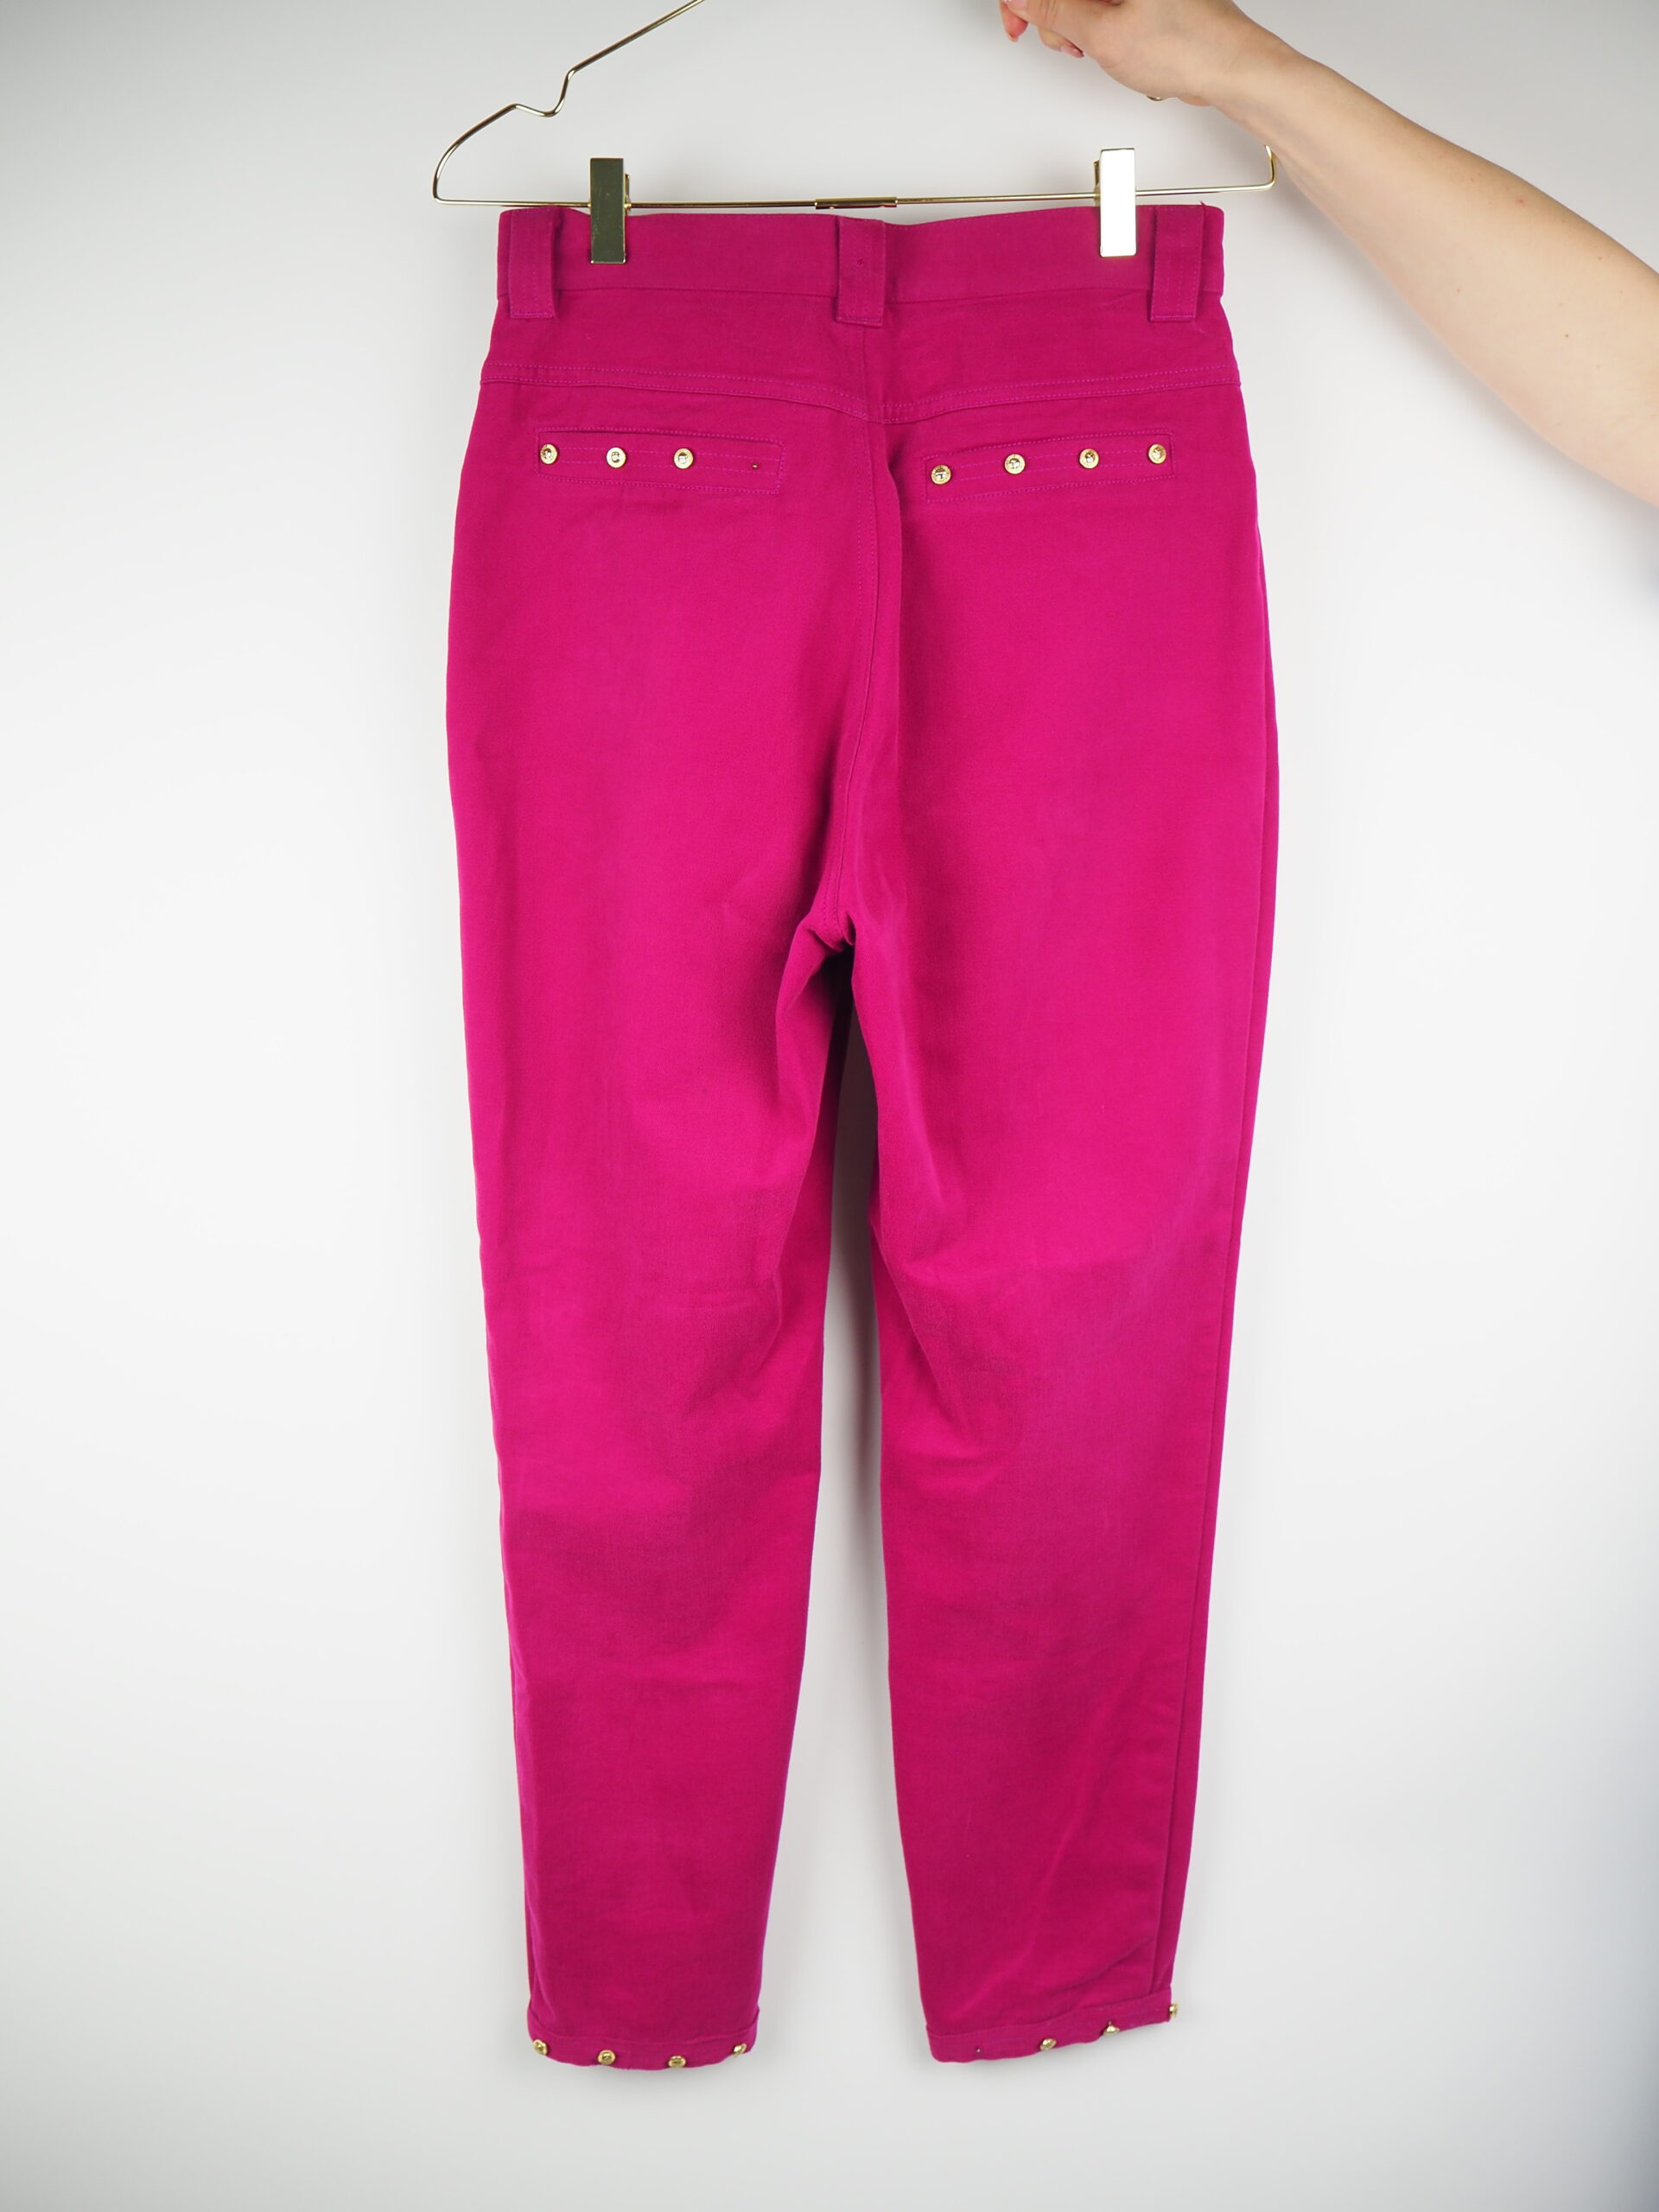 Versace Pink Pants Size 31 – Luxeparel